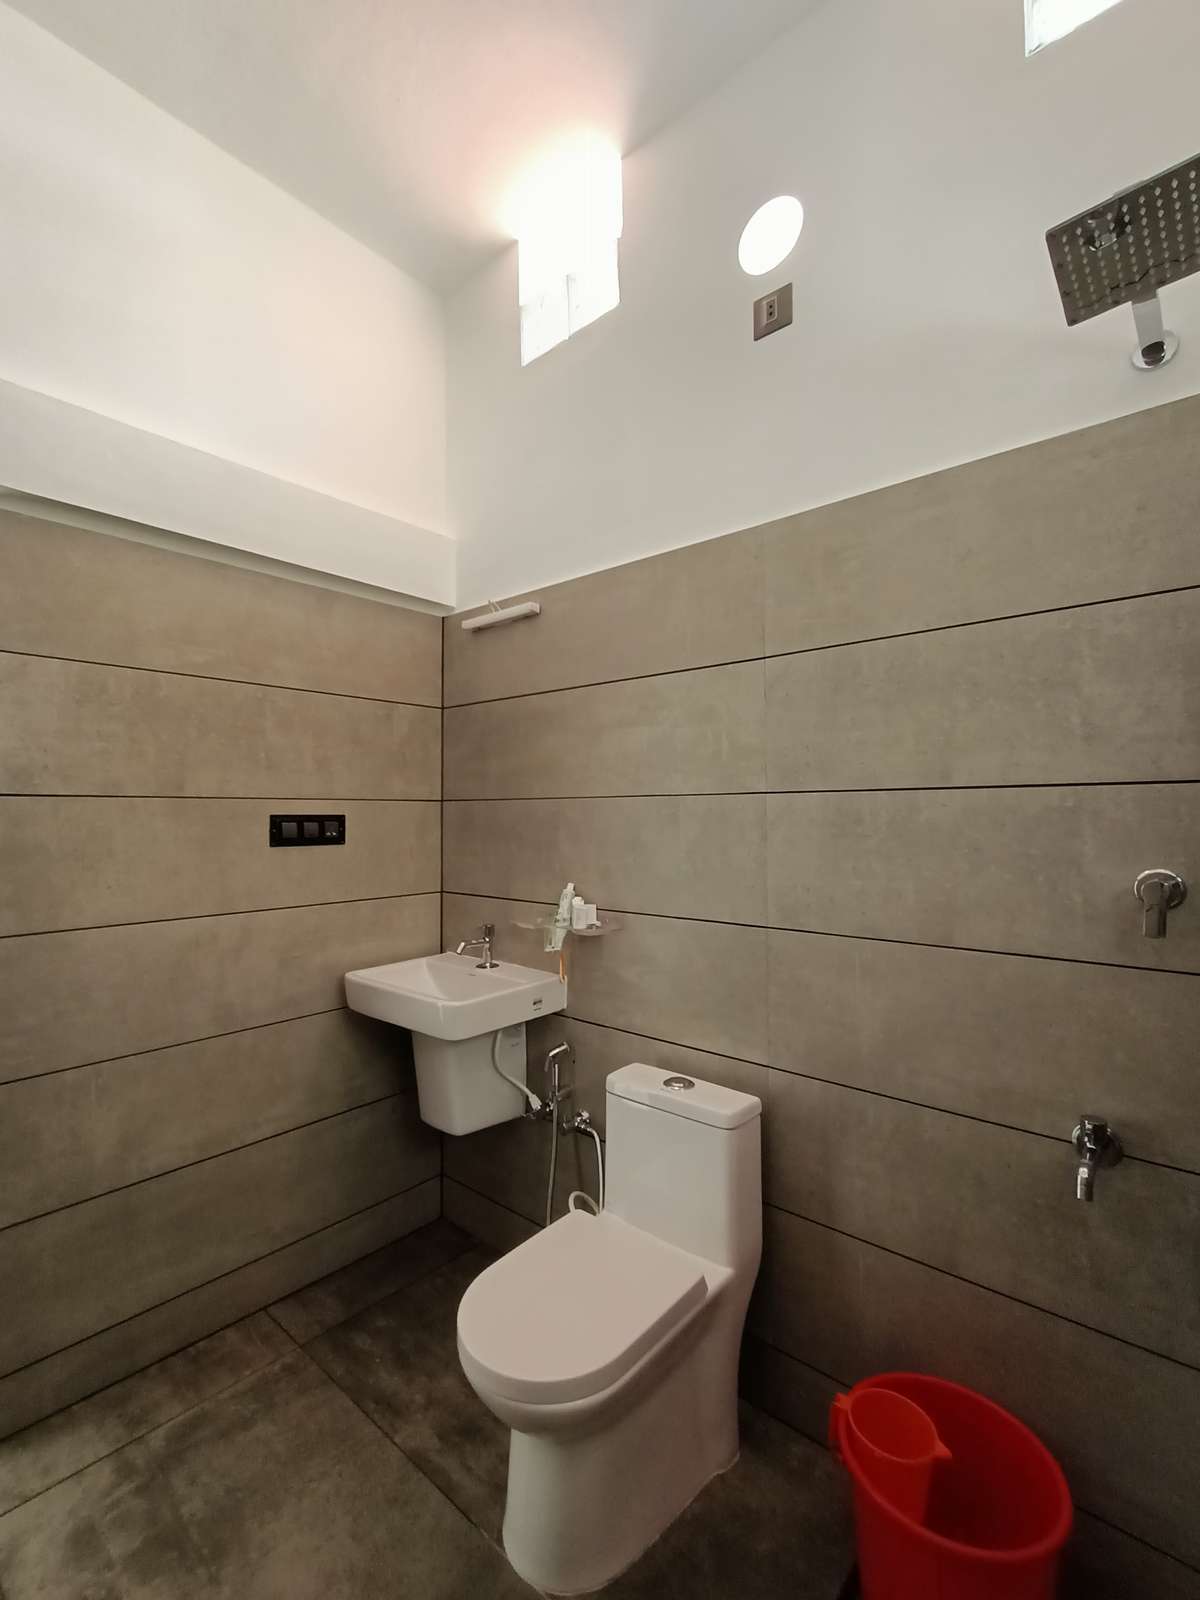 Bathroom designs, Cement textured tiles @Kasargod